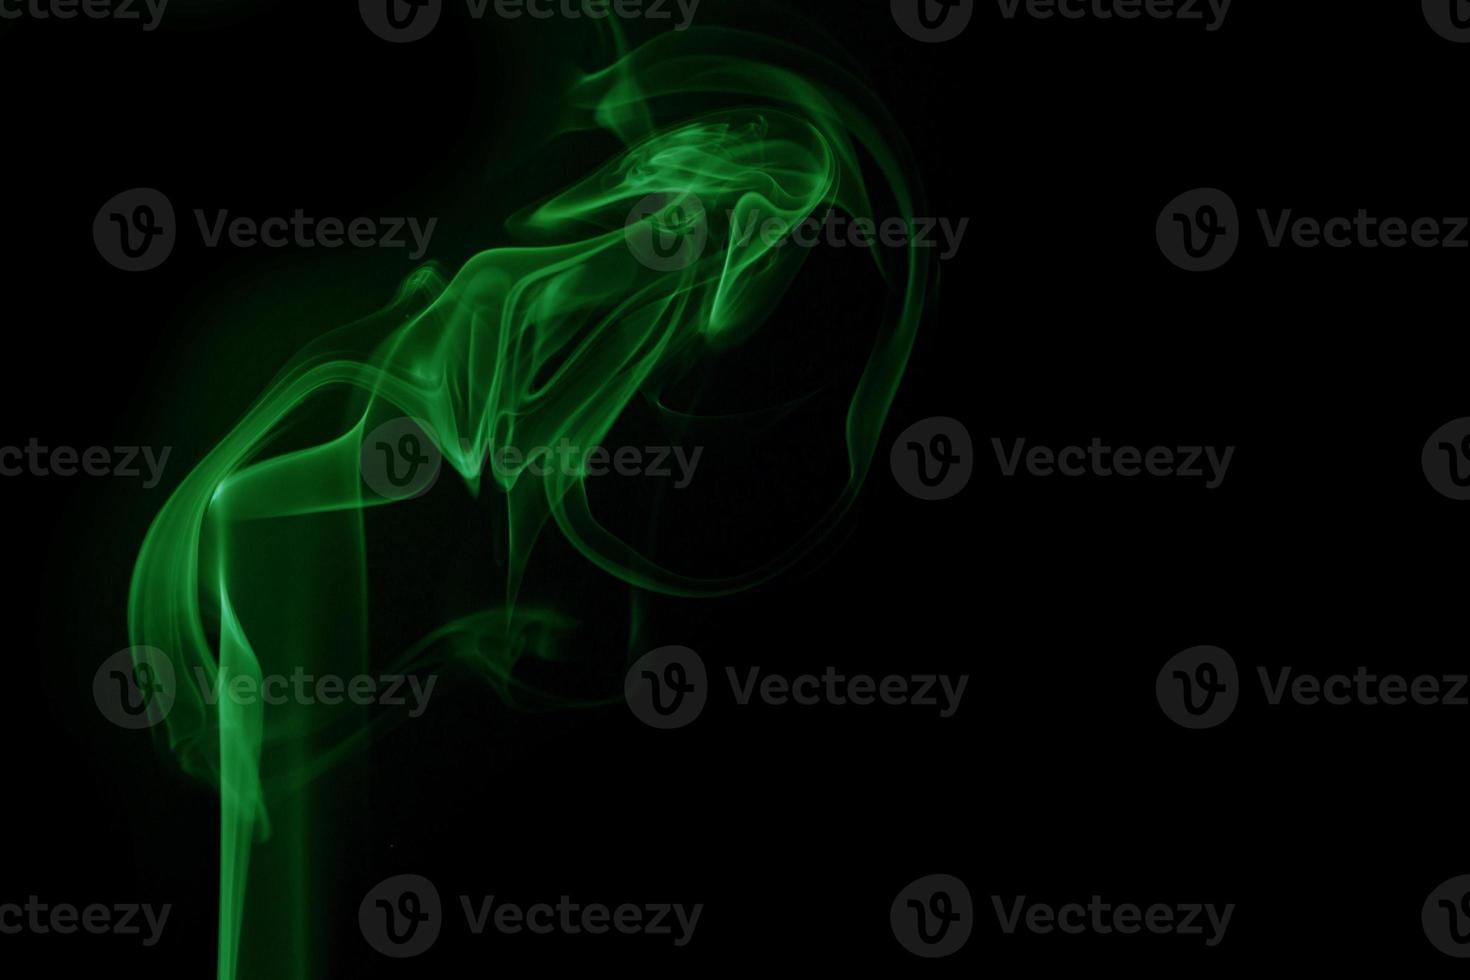 fumée verte sur fond noir photo